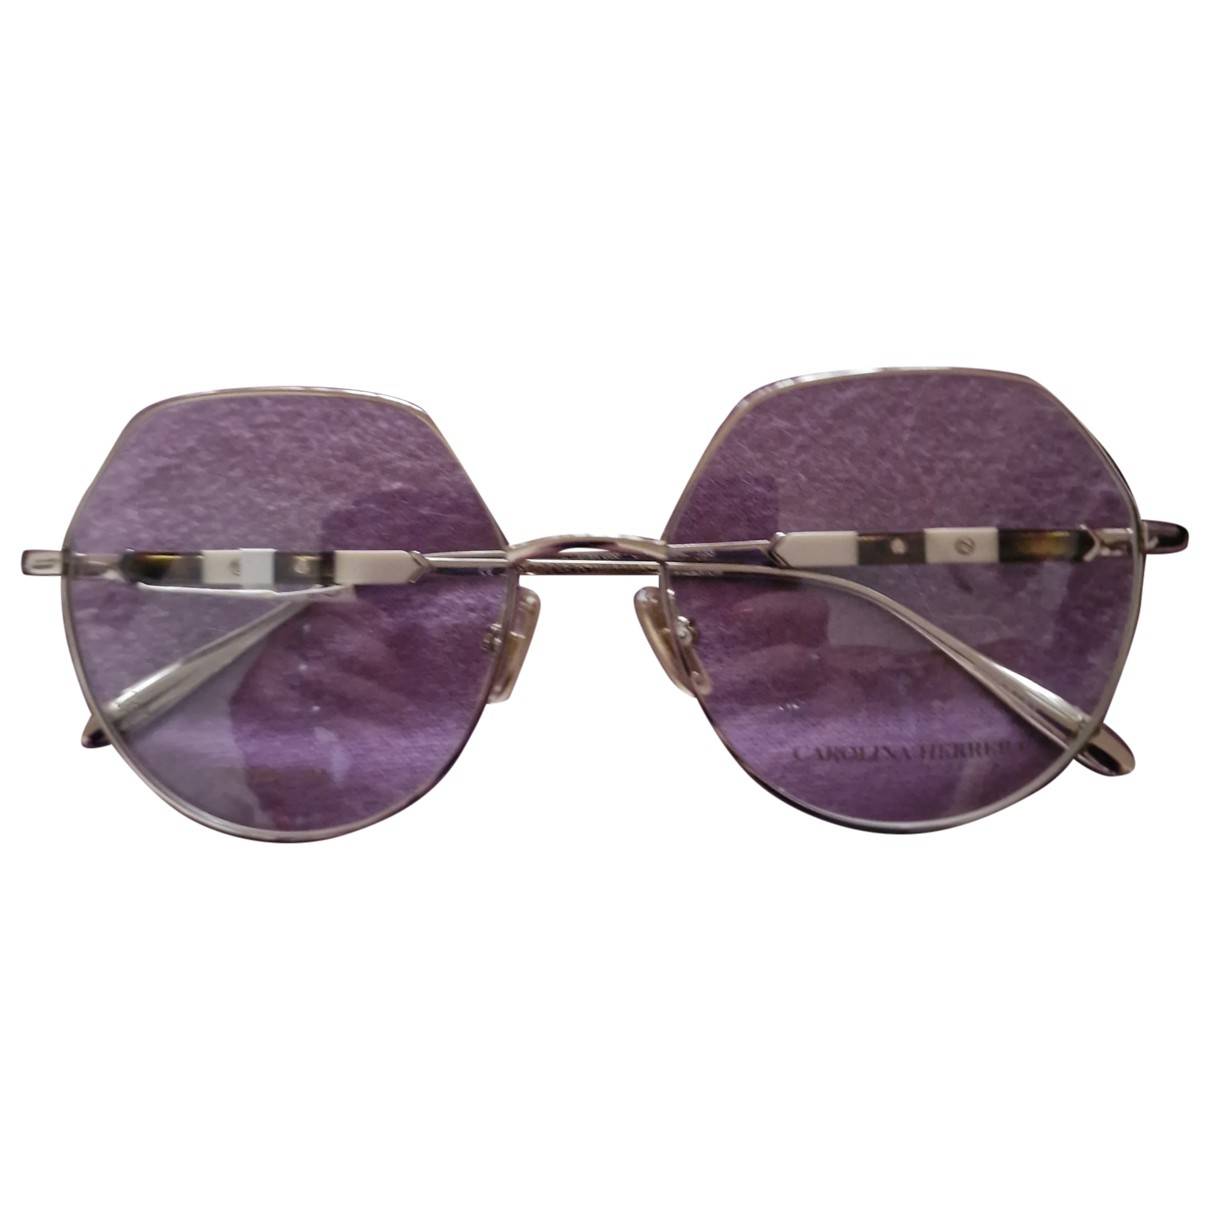 Oversized sunglasses Carolina Herrera